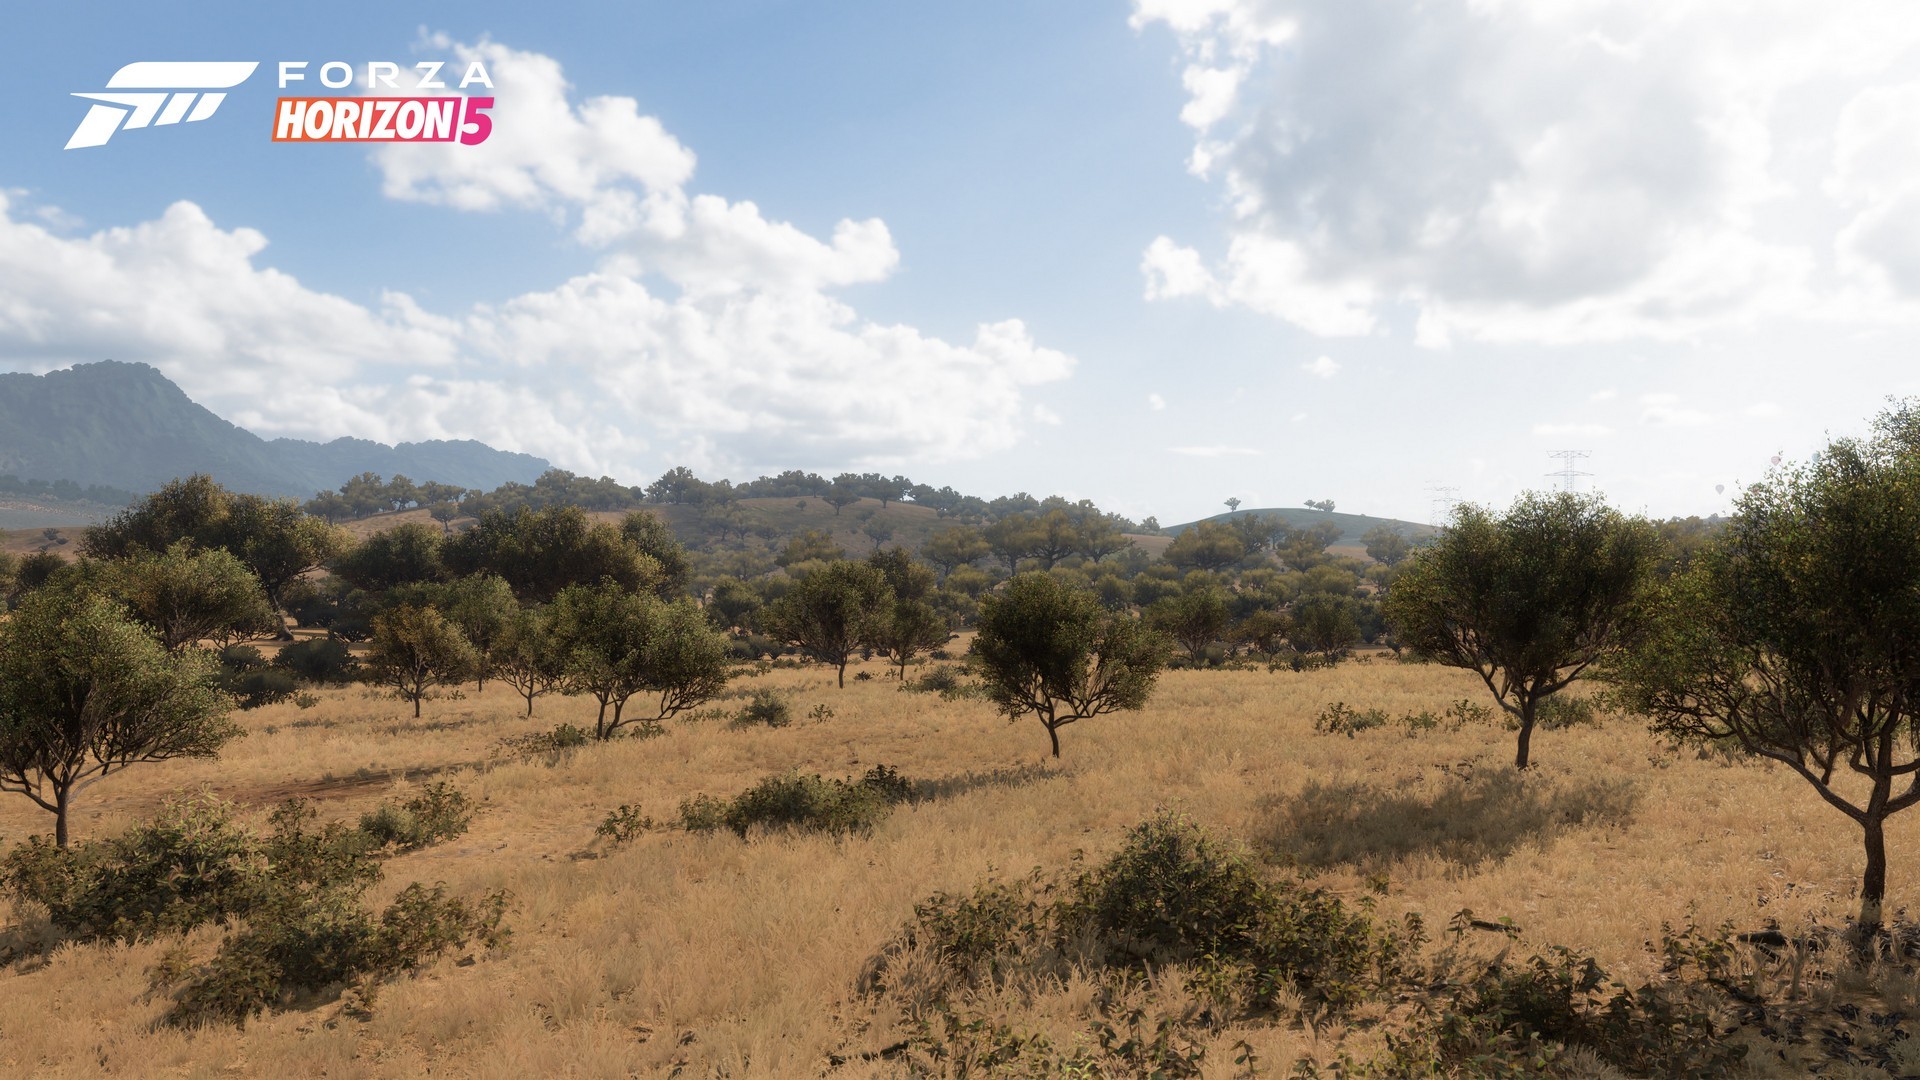 لعبة Forza Horizon 5 تتألق في ألبوم وهمي يظهر مدى واقعية بيئات اللعبة!